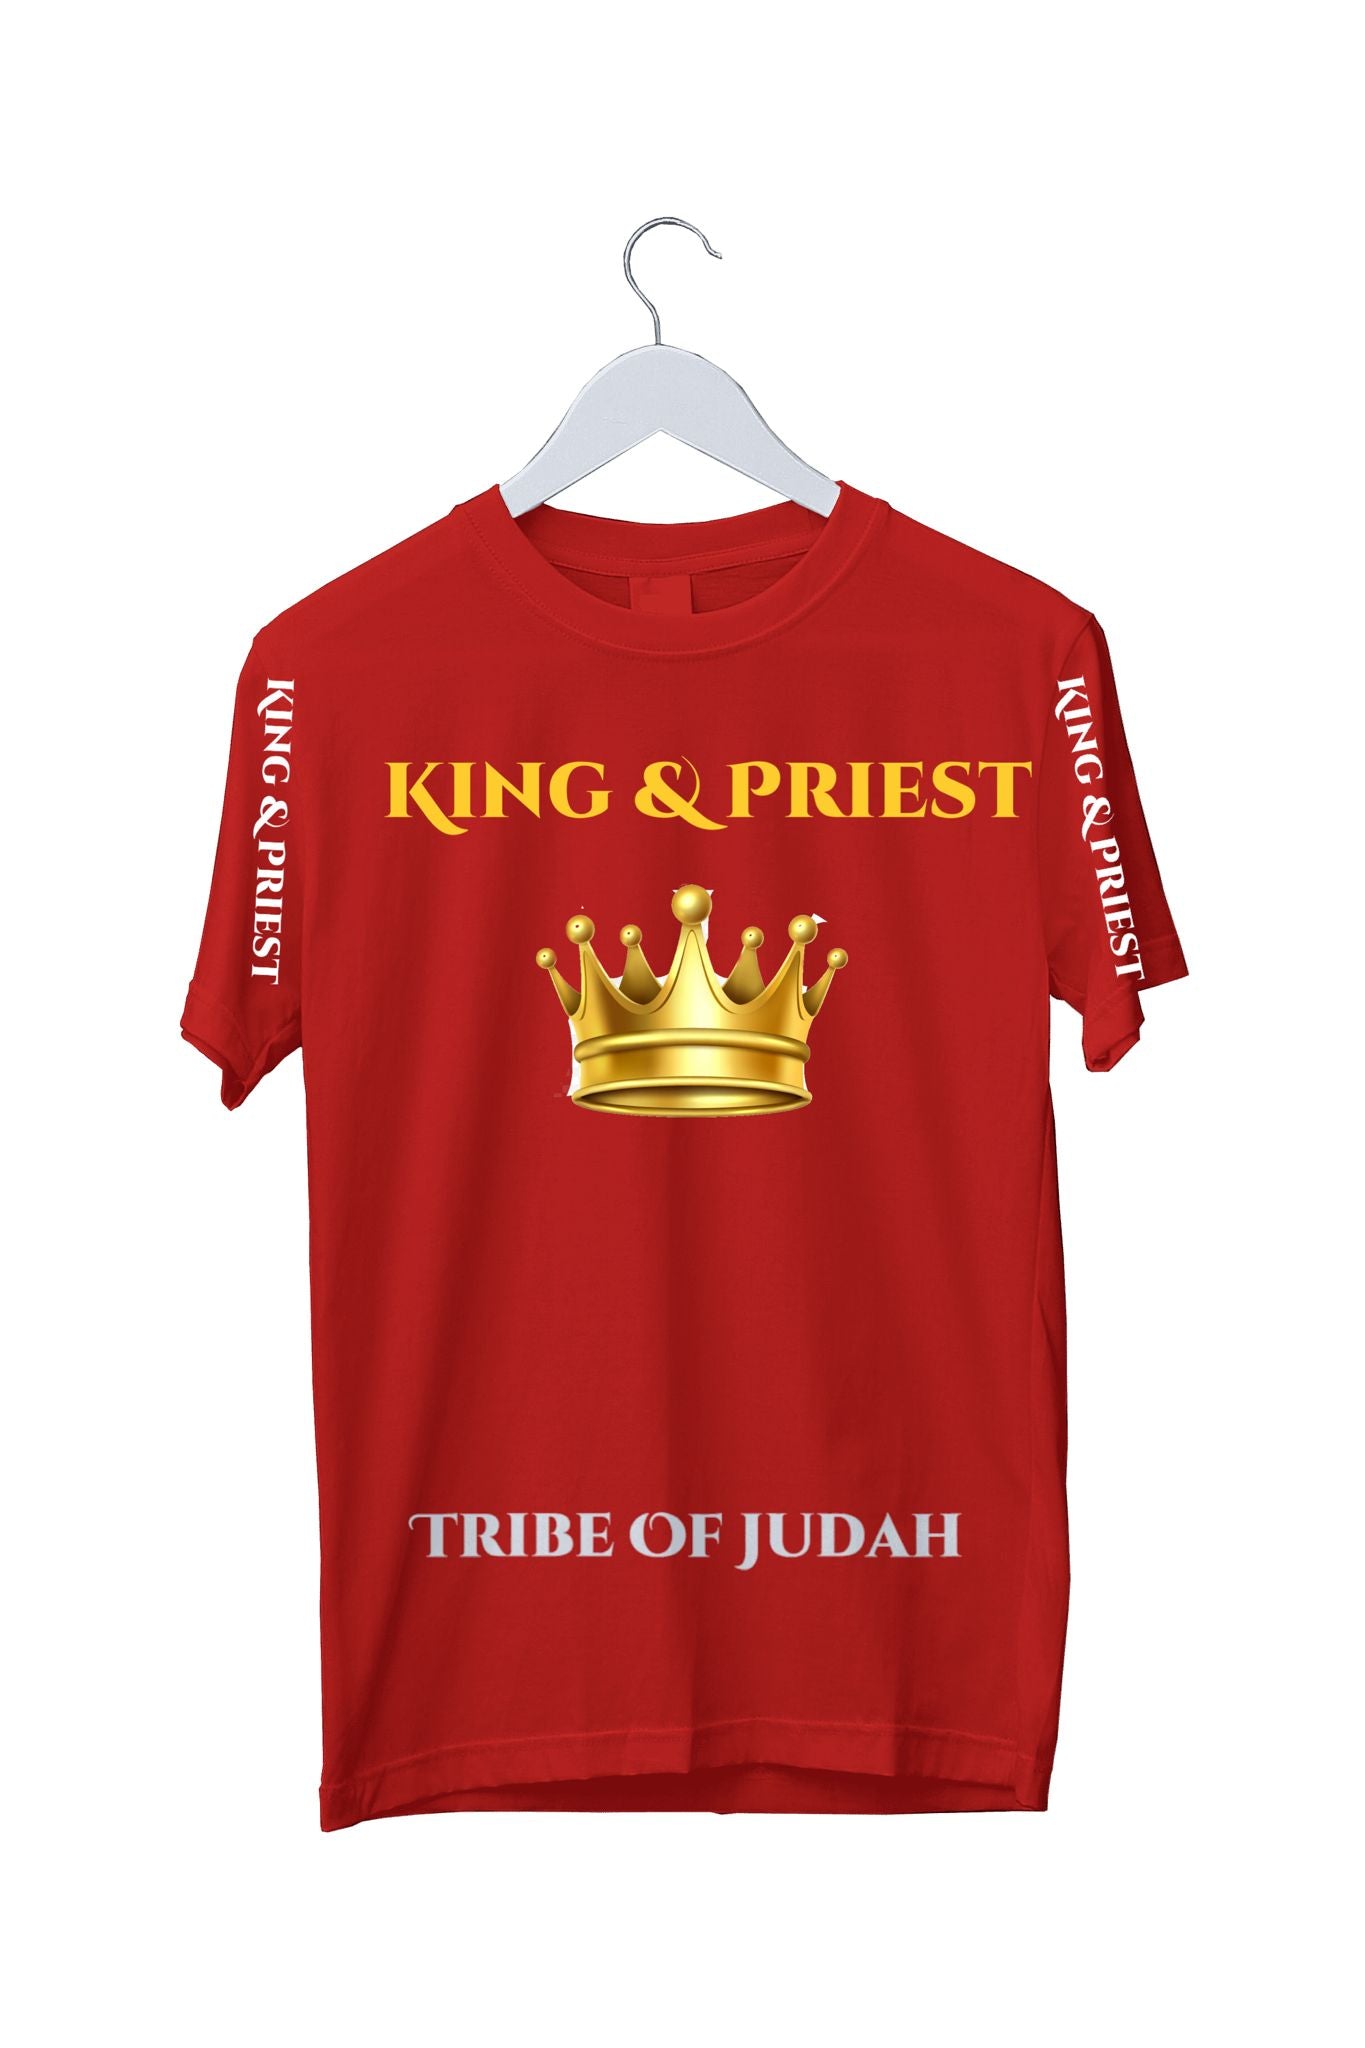 King & Priest (Judah)